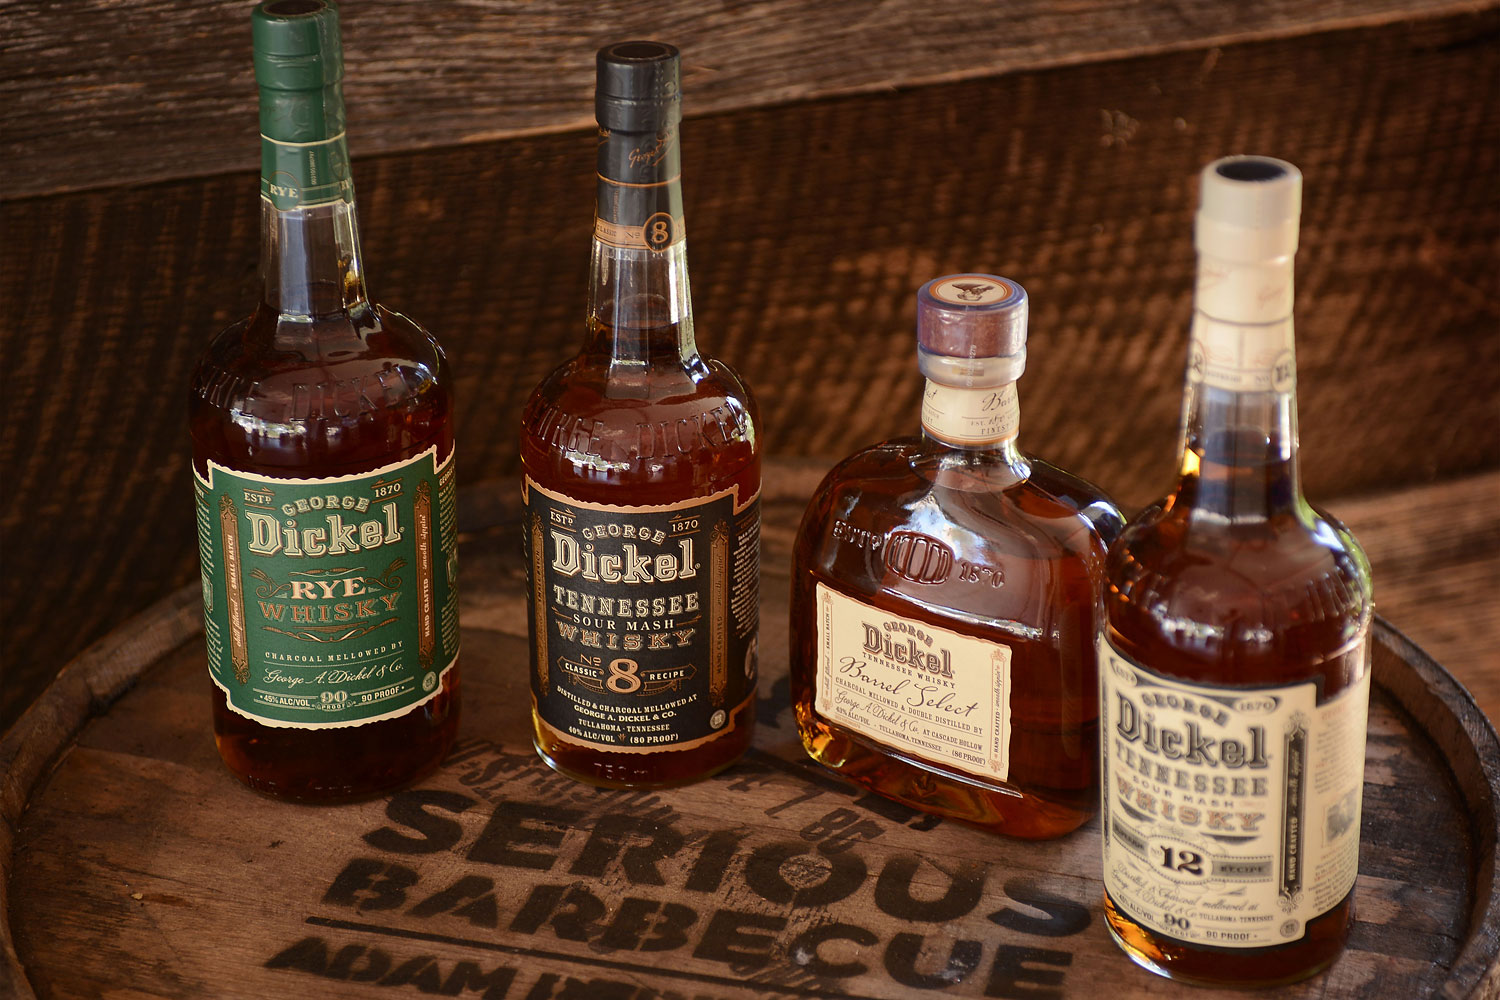 George Dickel Whisky on display at the George Dickel Experience during Meatopia, Nov. 3, 2013, in San Antonio.